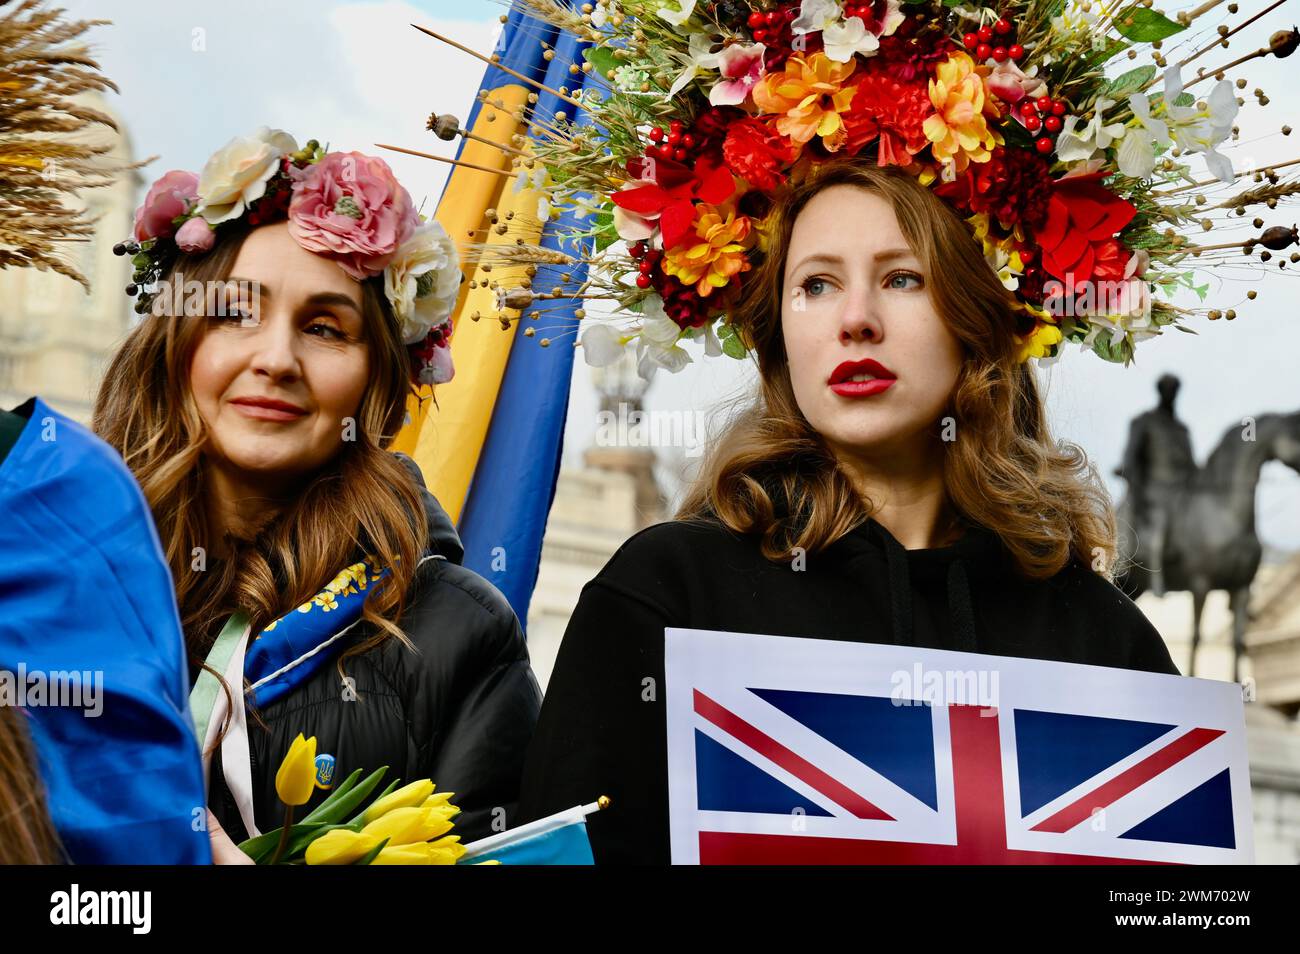 London, Großbritannien. Tausende von Demonstranten feierten den zweiten Jahrestag der russischen Invasion in der Ukraine, indem sie sich auf dem Trafalgar-Platz versammelten, um Kraft und Solidarität zu zeigen. Quelle: michael melia/Alamy Live News Stockfoto